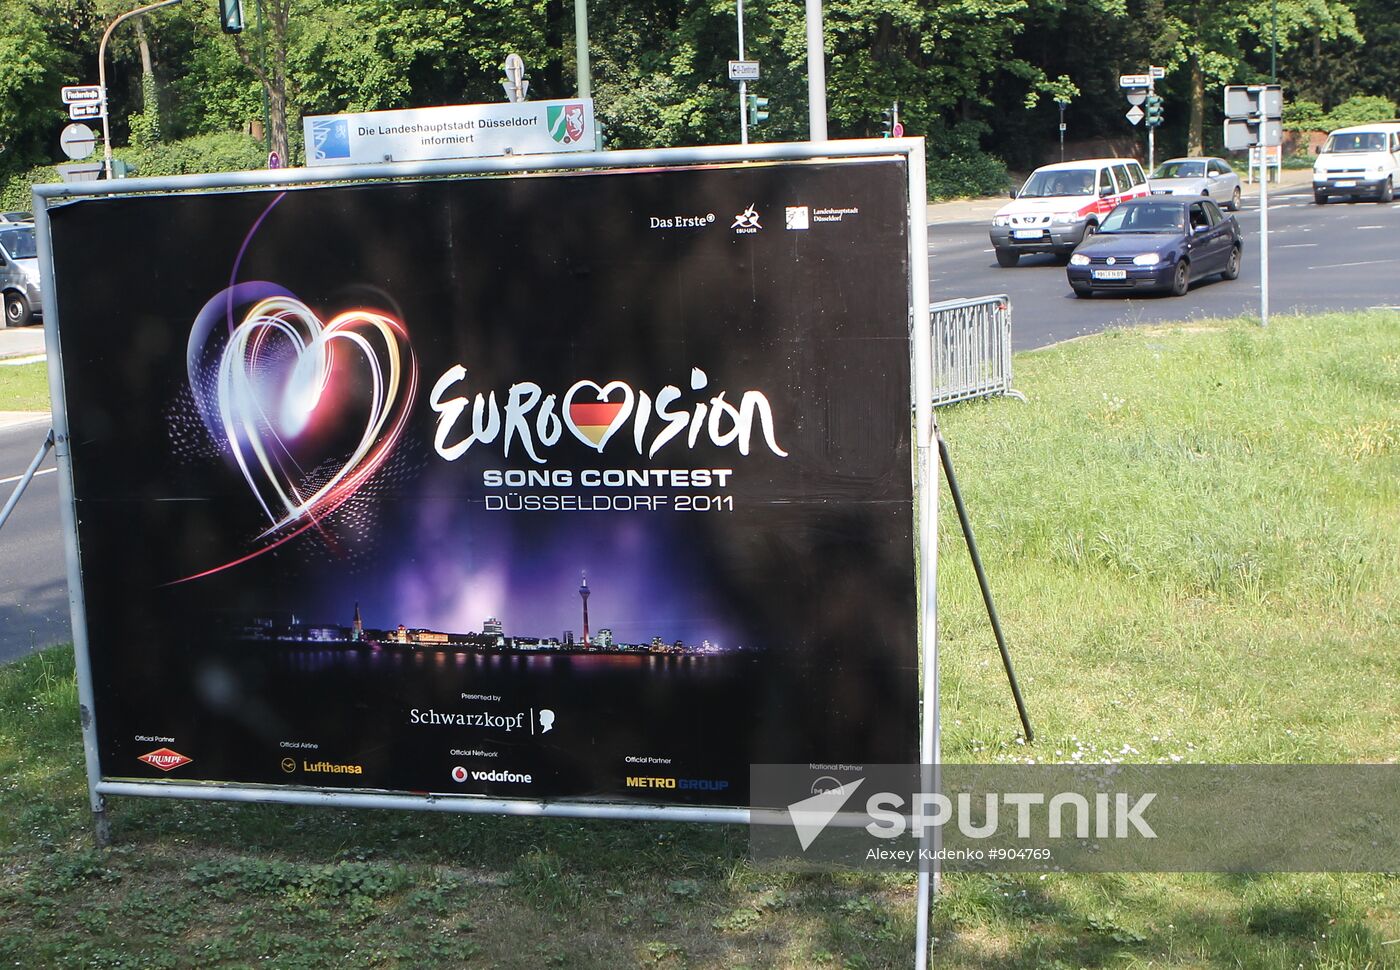 'Eurovision 2011' banner on Düsseldorf street